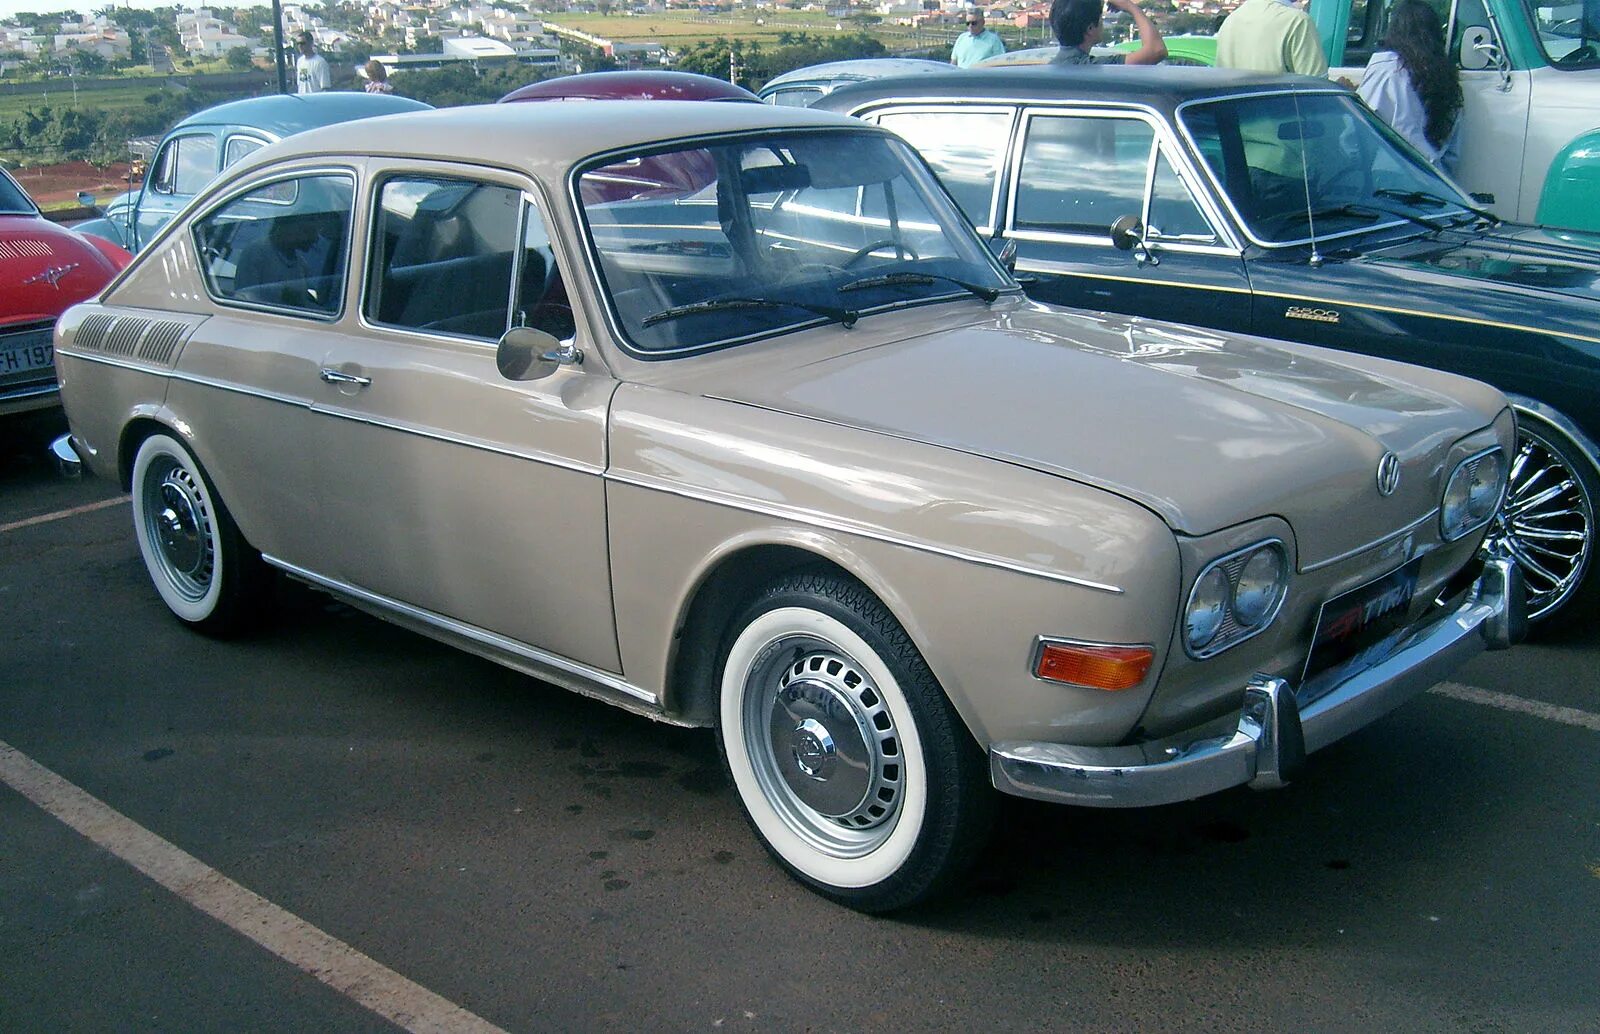 Vw tl. VW TL 1600. VW 1600 TL 1971. Brazilian Volkswagen 1600. 1970 VW Type 3.